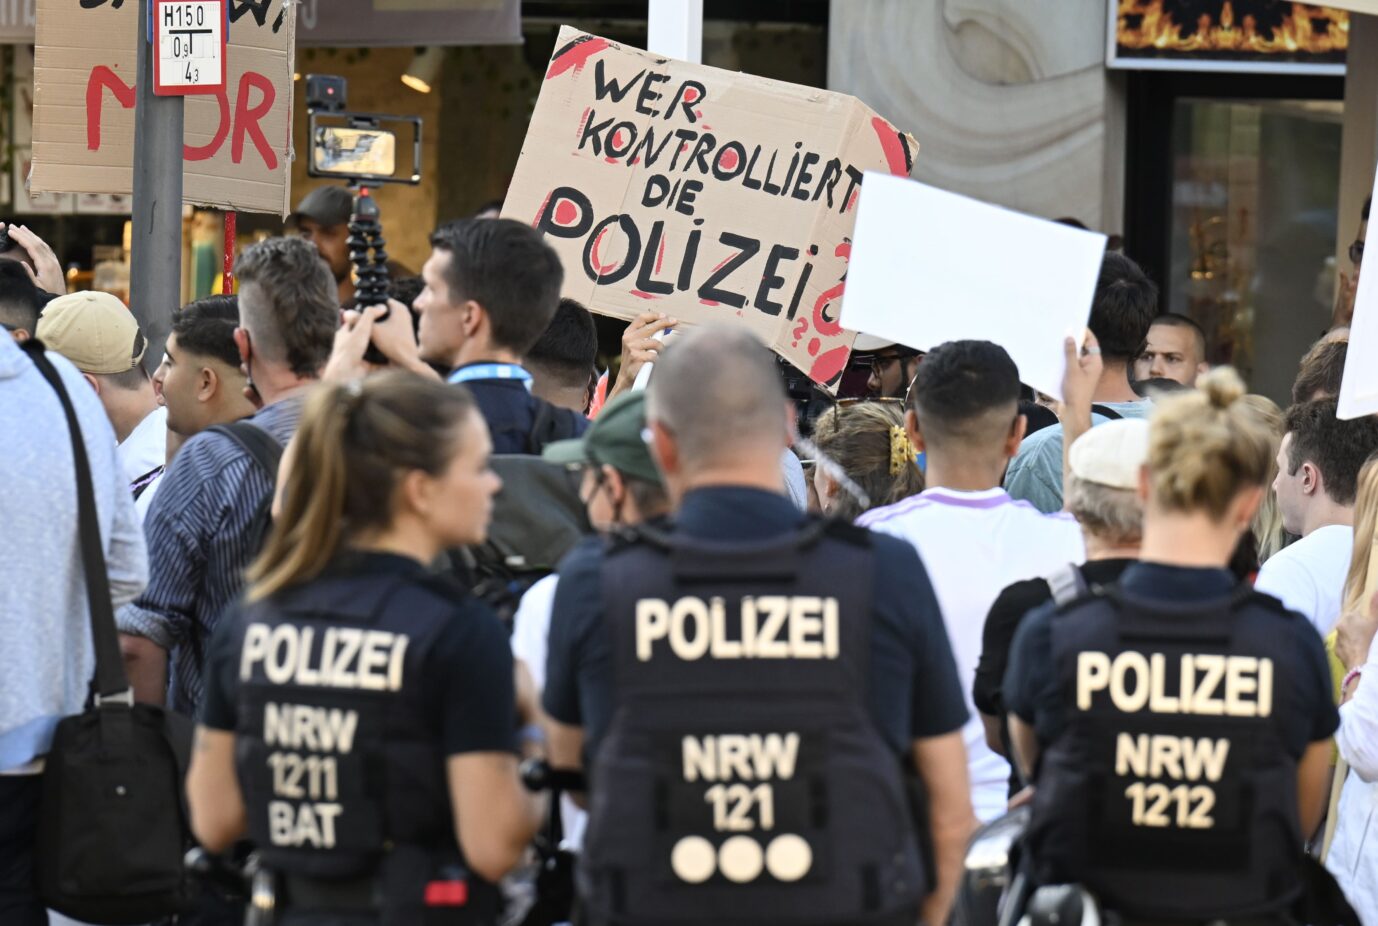 Die Dortmunder Polizei sichert eine Demonstration ab, die am 10. August an den Tod eines 16jährigen Senegalesen während eines Polizeieinsatzes erinnert. Jetzt ermittelt die Staatsanwaltschaft gegen weitere Beamte in dem Fall. Foto: picture alliance/dpa | Roberto Pfeil